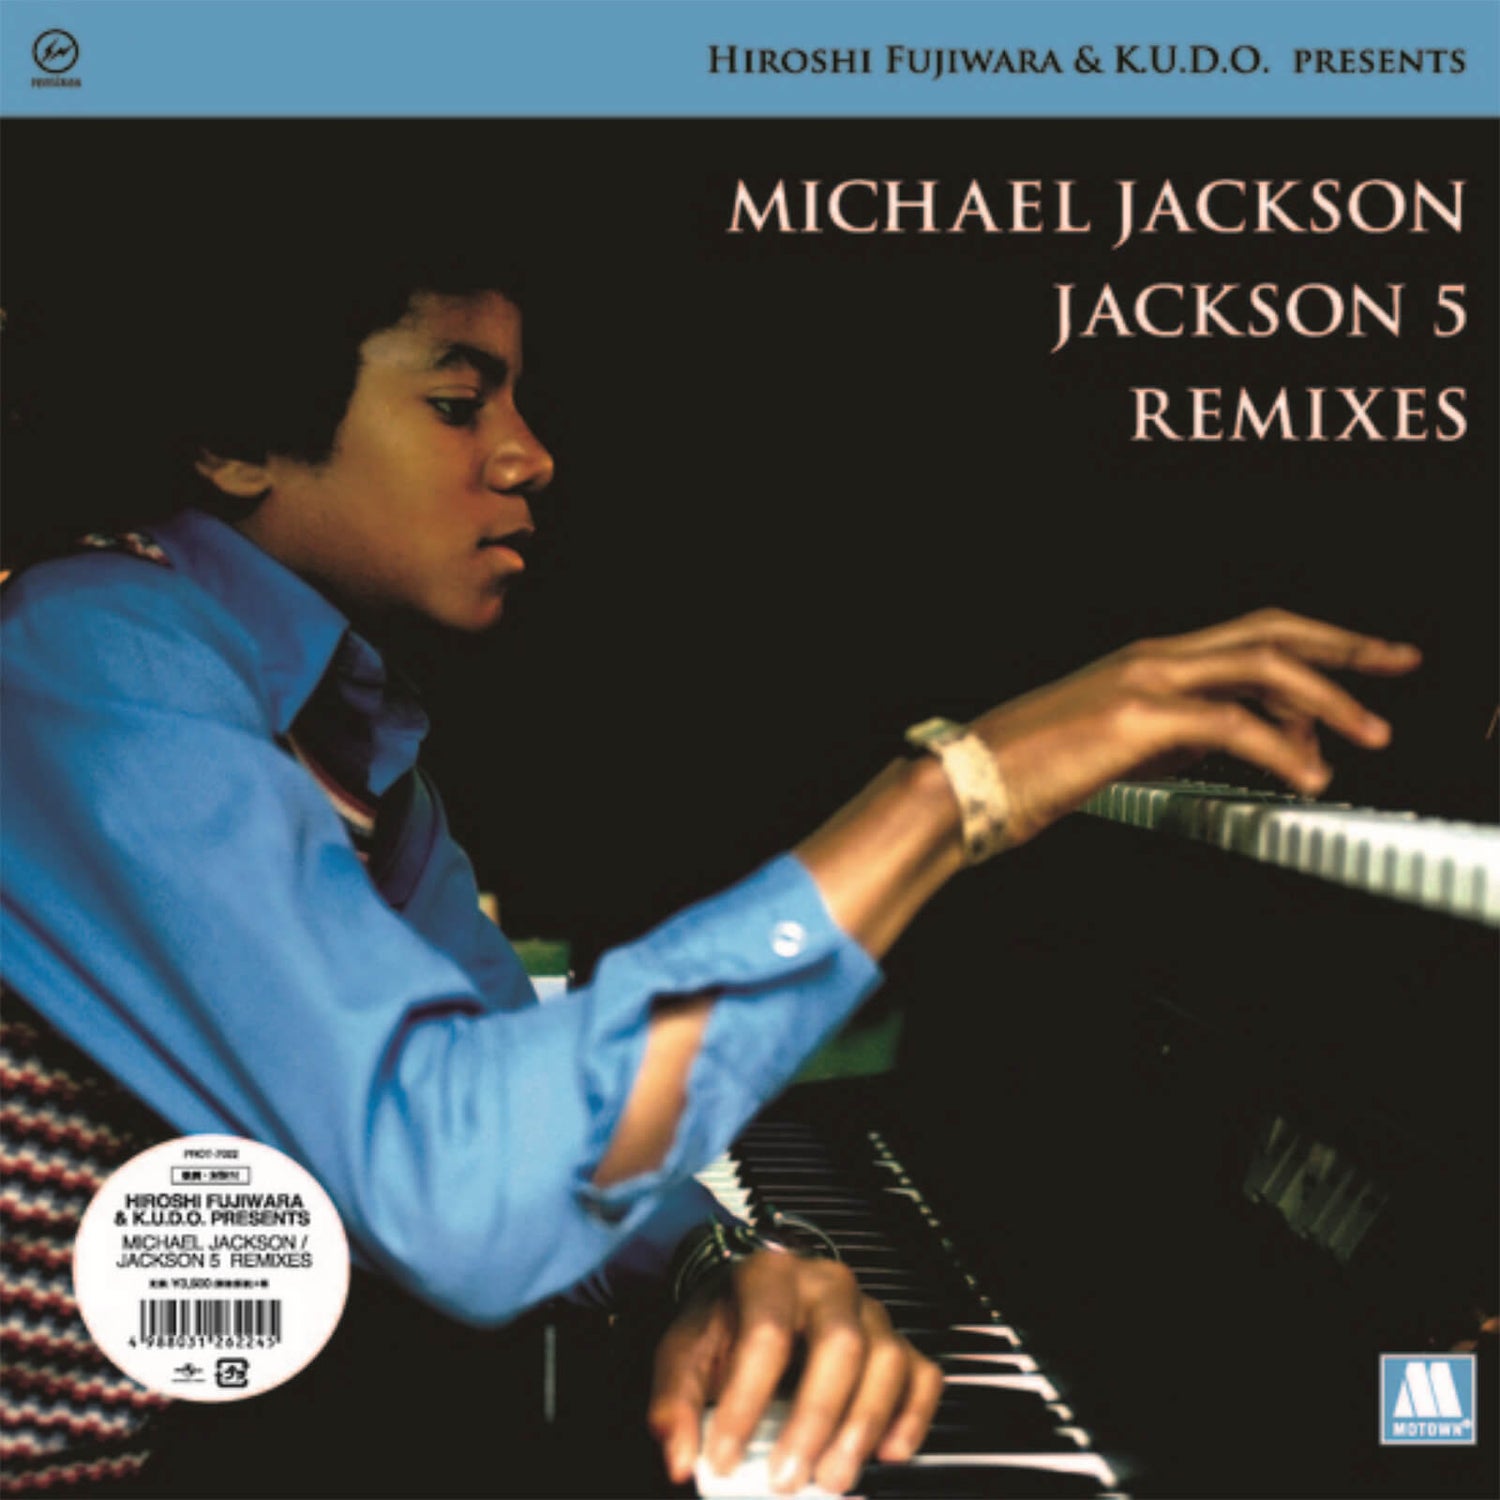 Hiroshi Fujiwara and K.U.D.O. - Michael Jackson / Jackson 5 Remixes Vinyl